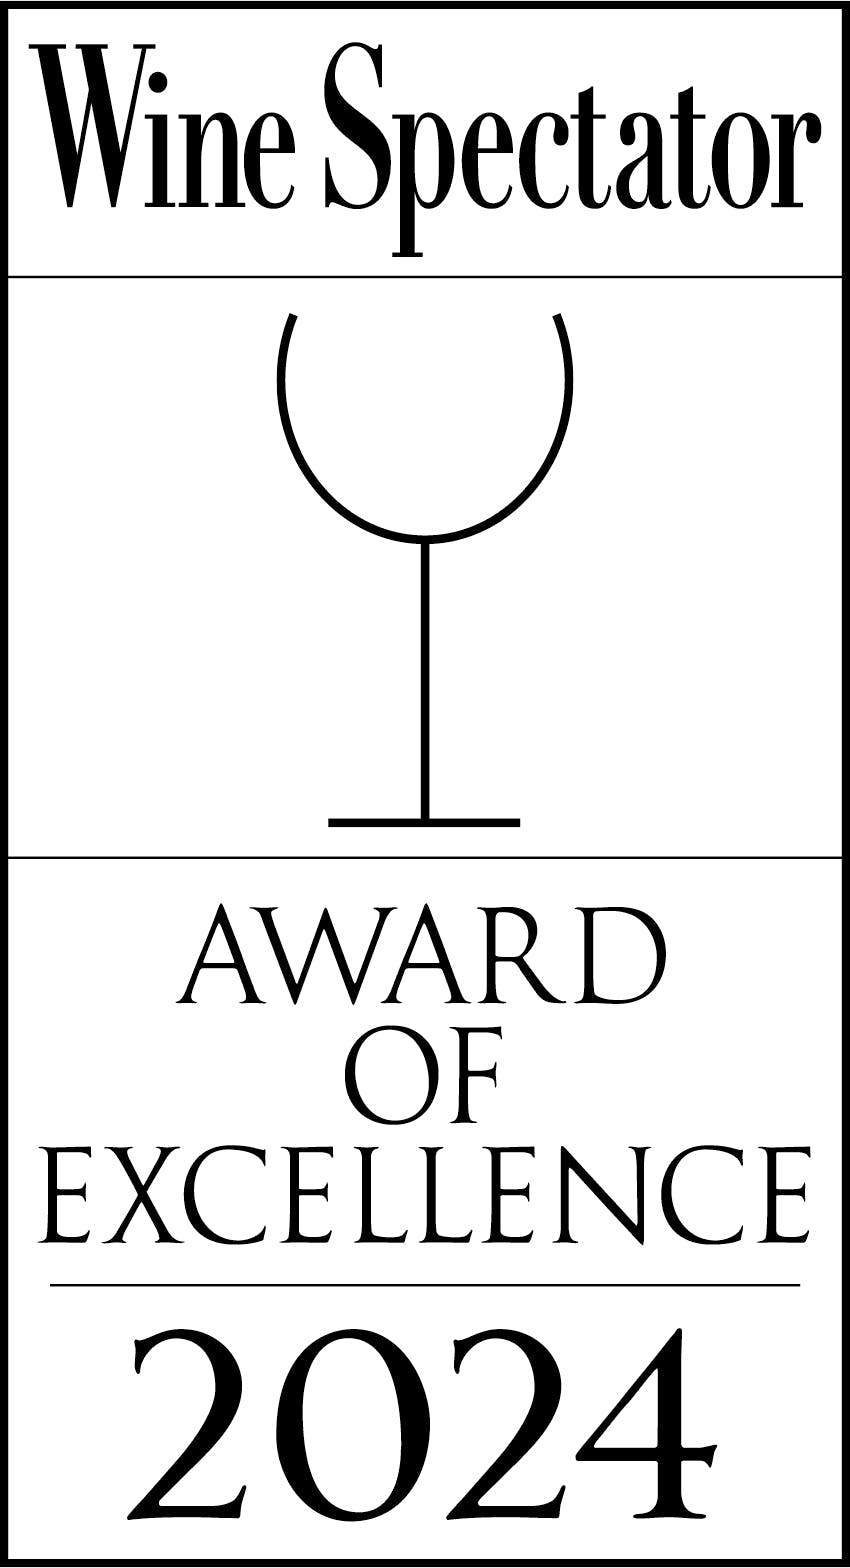 Wine Spectator Award, Open in a New Window